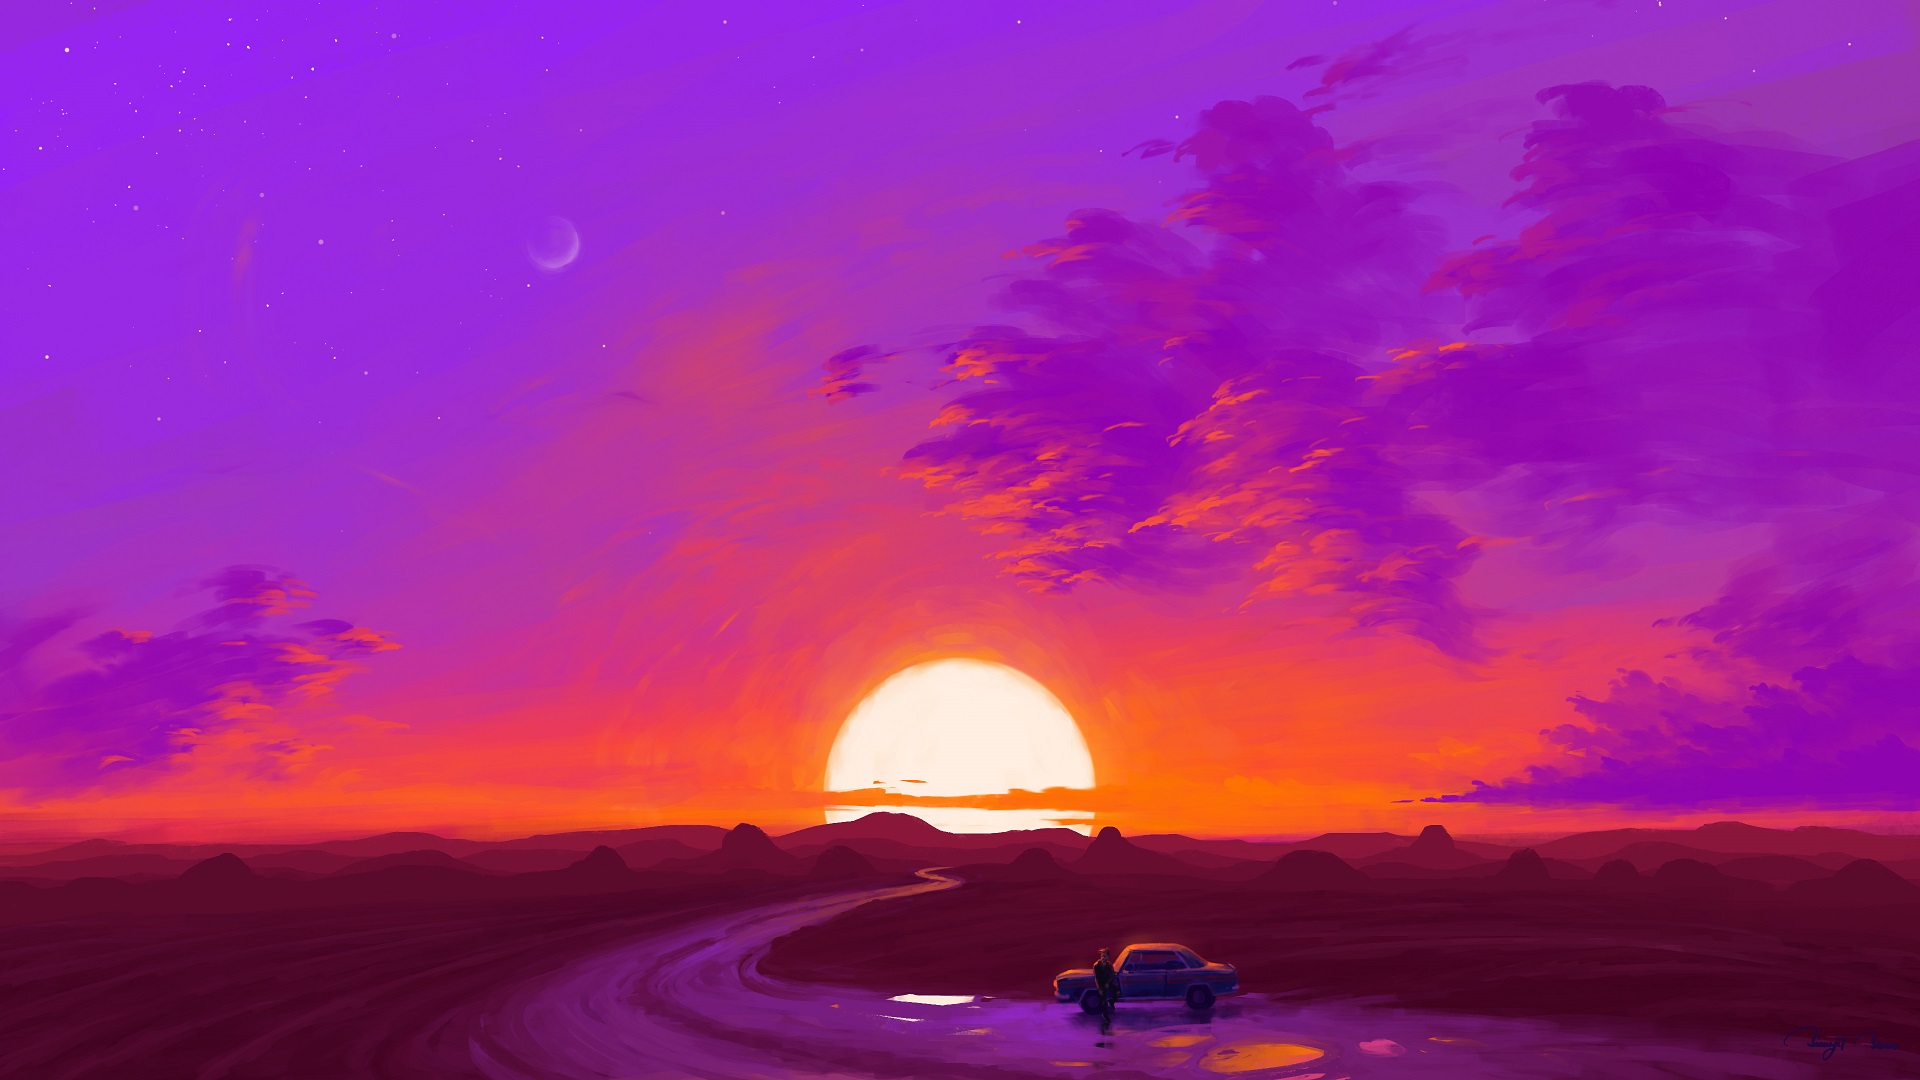 General 1920x1080 digital painting landscape car sunset artwork BisBiswas